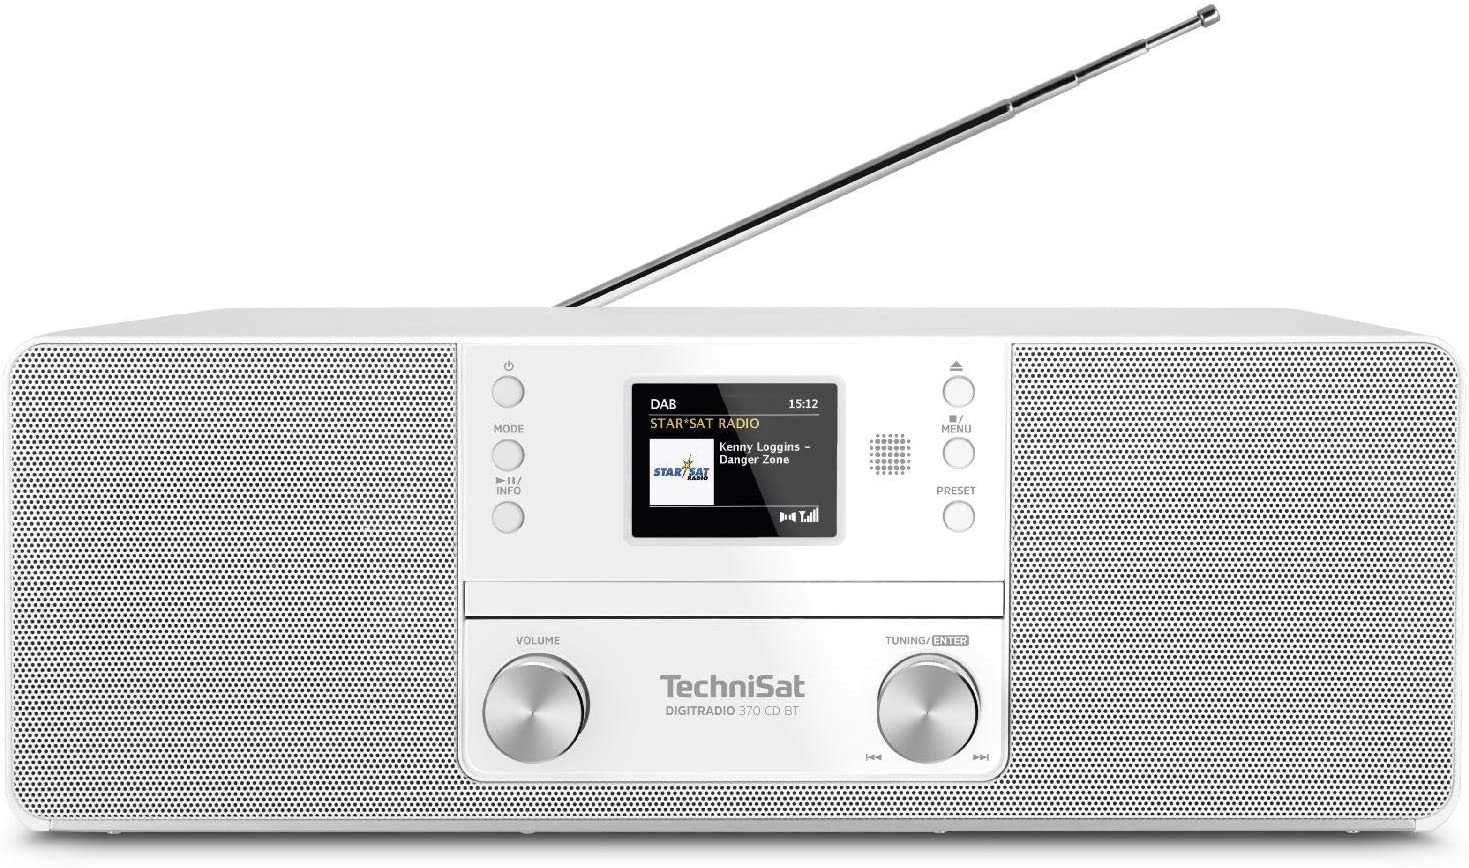 TechniSat DigitRadio 370 CD BT (0001/3948)